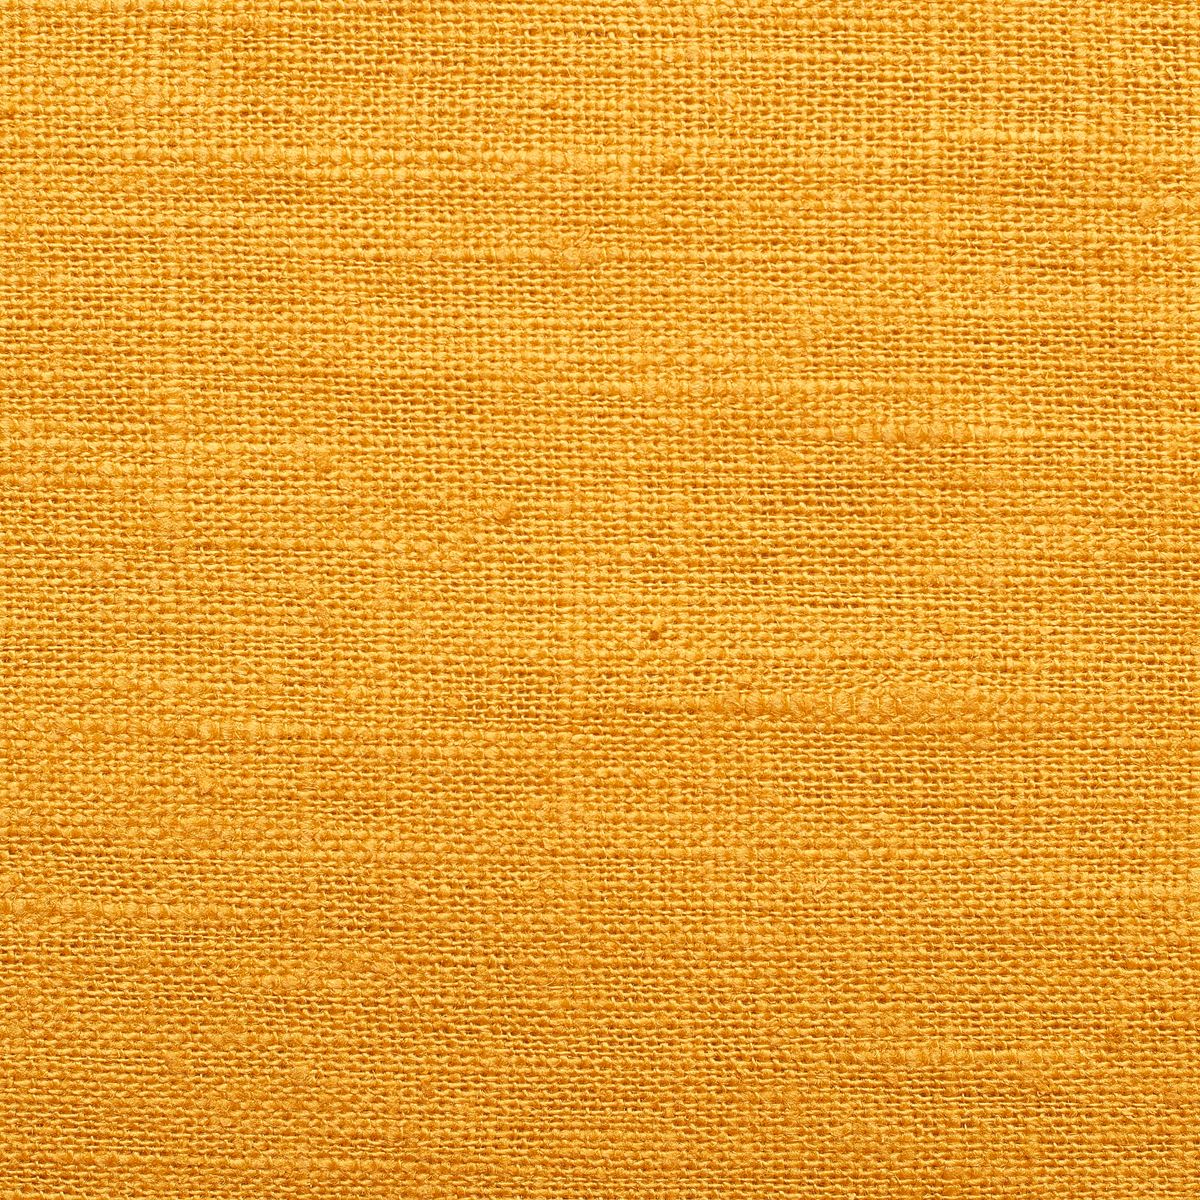 Amarillo-Ocre	